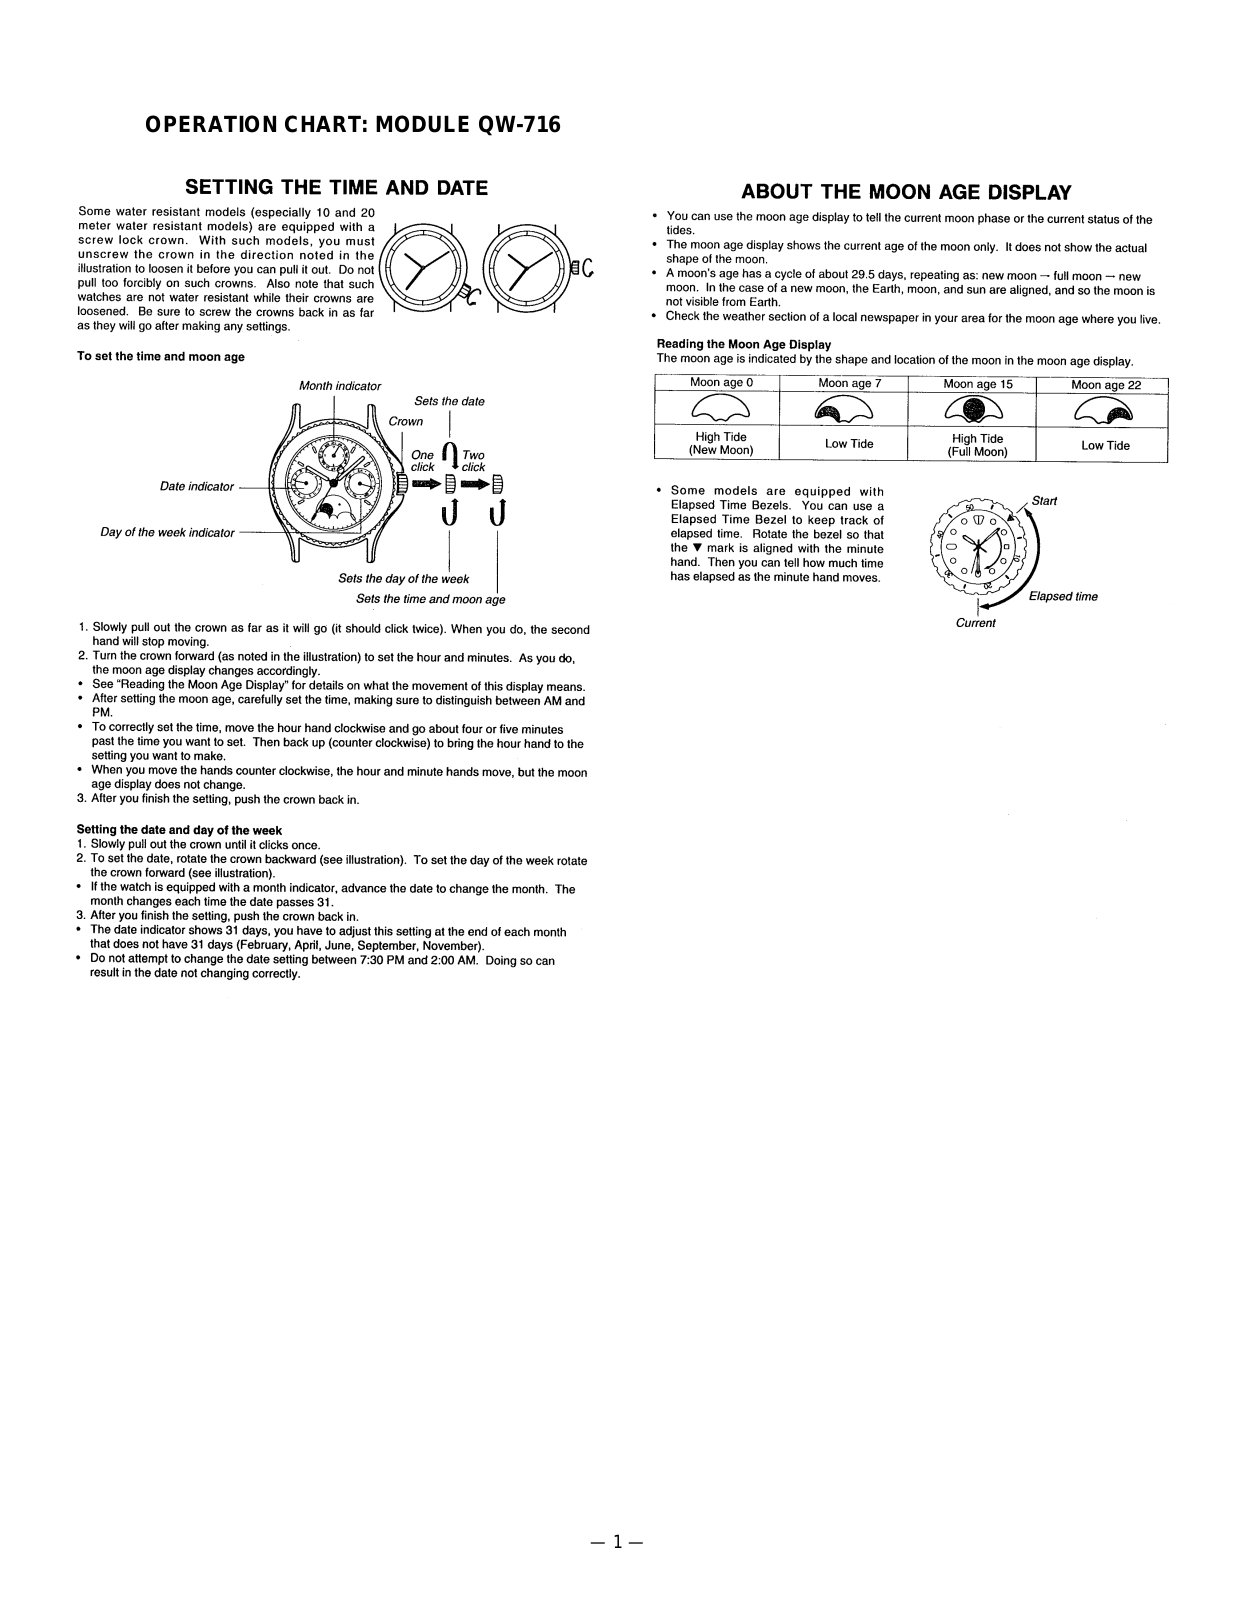 Casio 716 Owner's Manual